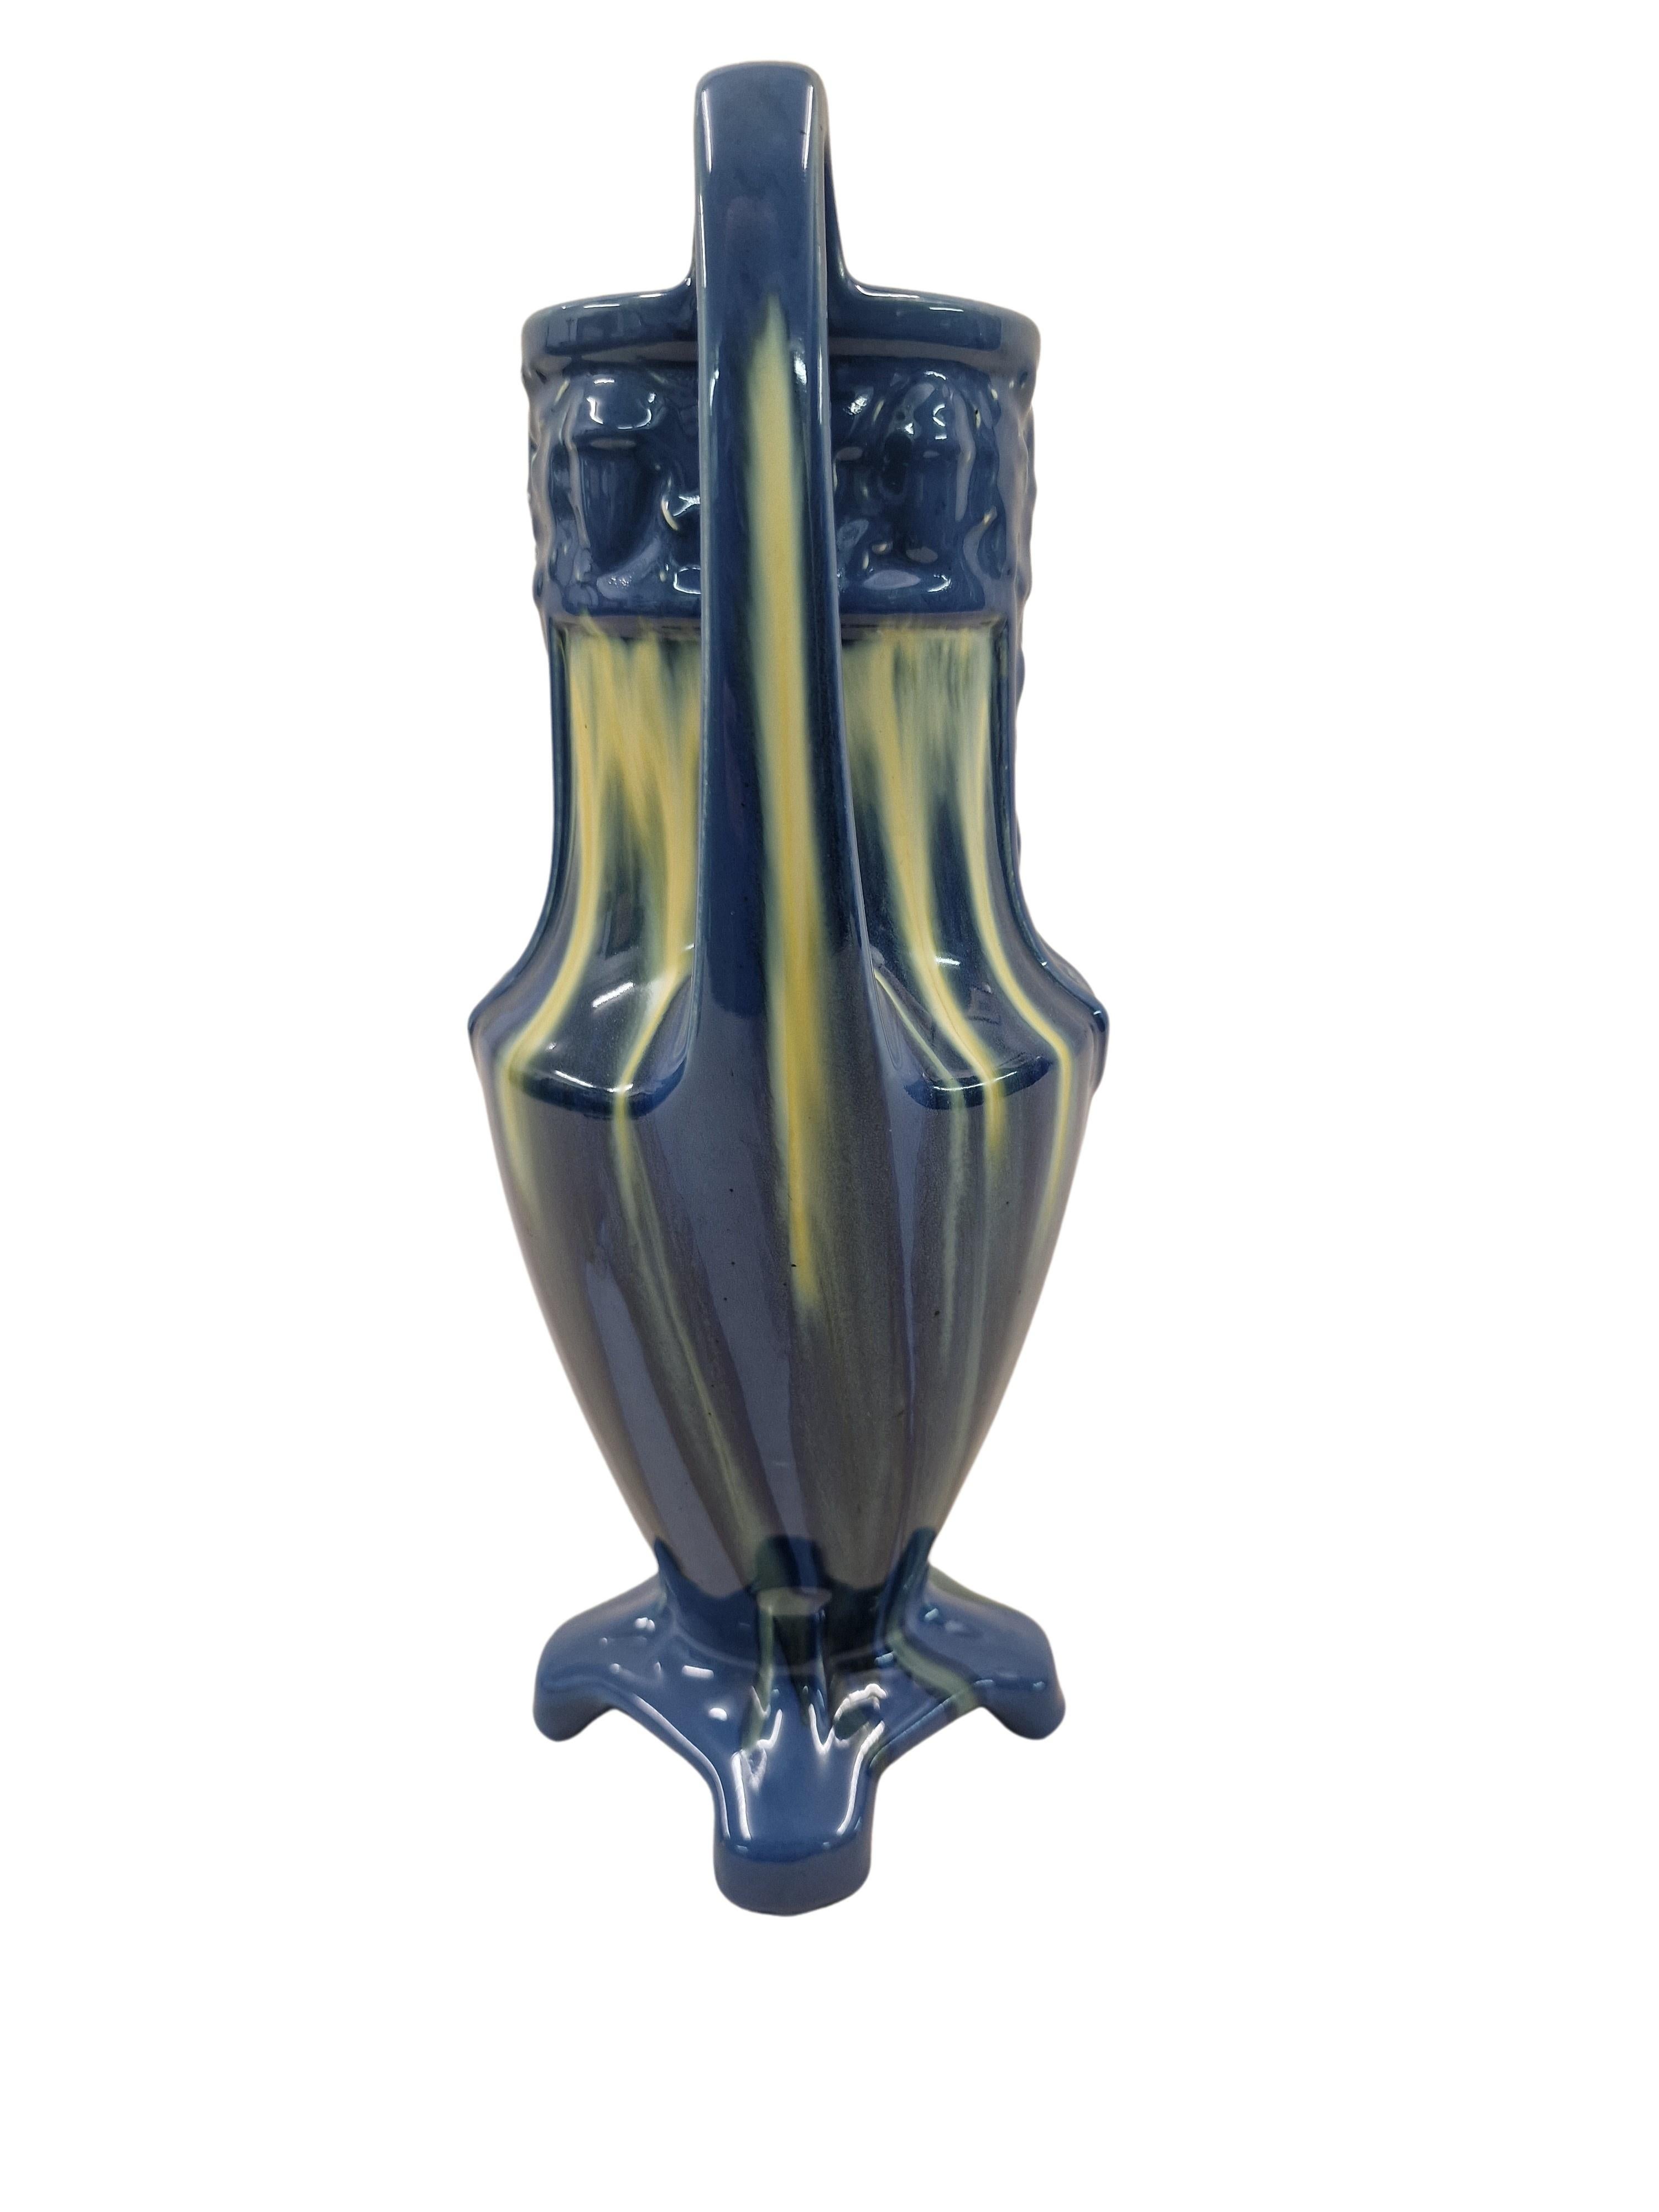 Sehr dekorative Vase aus der Zeit des frühen Art déco, hergestellt in Frankreich. 

Dieses Objekt hat eine Form, die den antiken griechischen Amphoren ähnelt, verfügt jedoch über einen Vierpass-Ständer, um Stabilität zu gewährleisten, im oberen